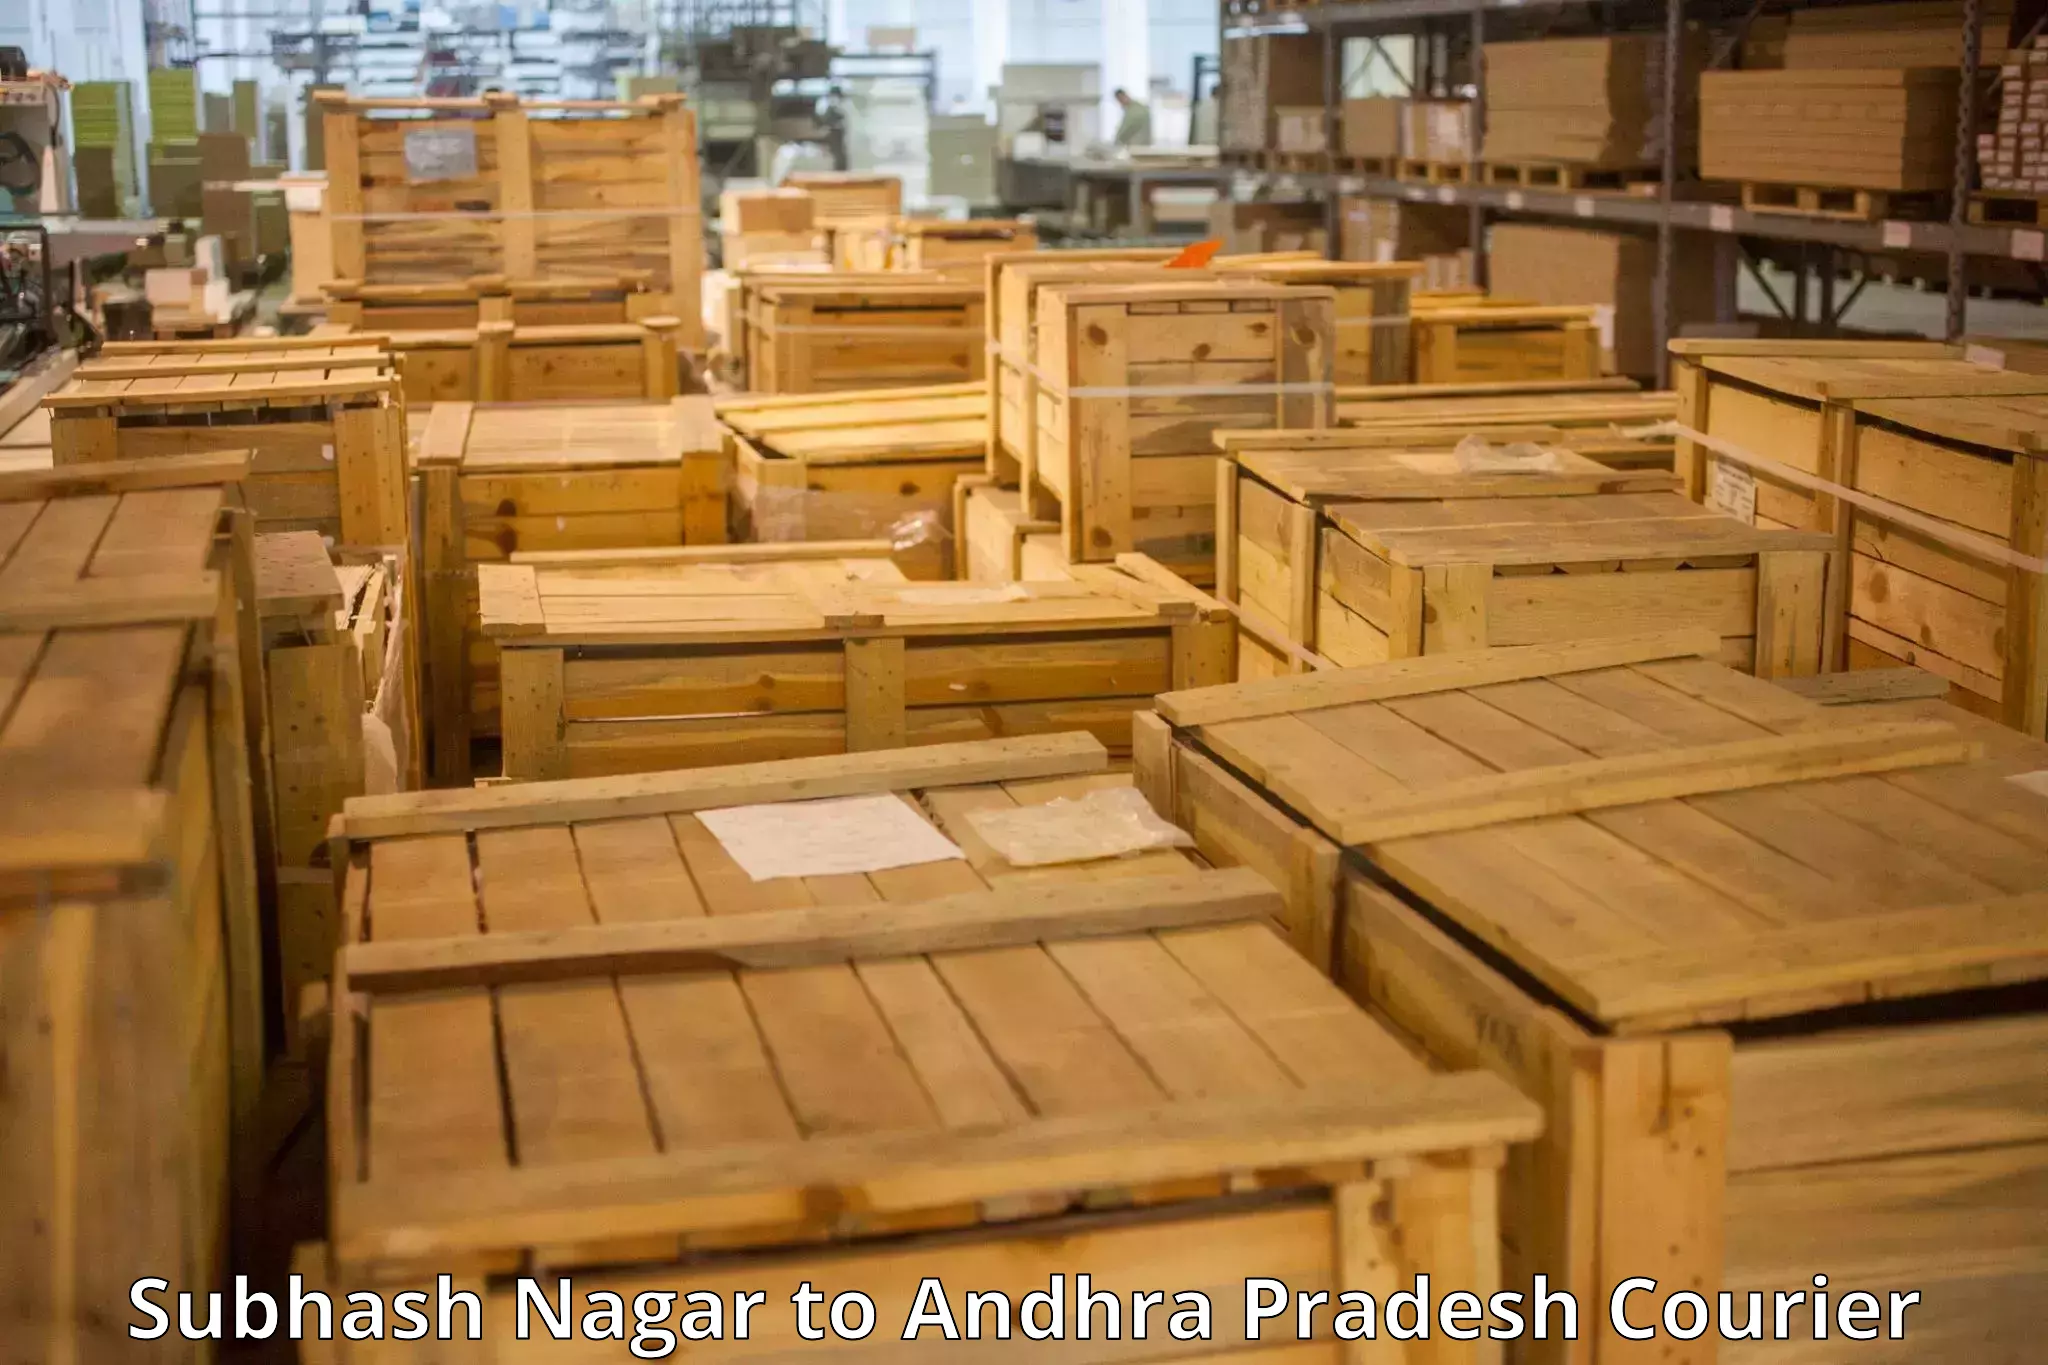 Baggage transport technology in Subhash Nagar to Andhra Pradesh